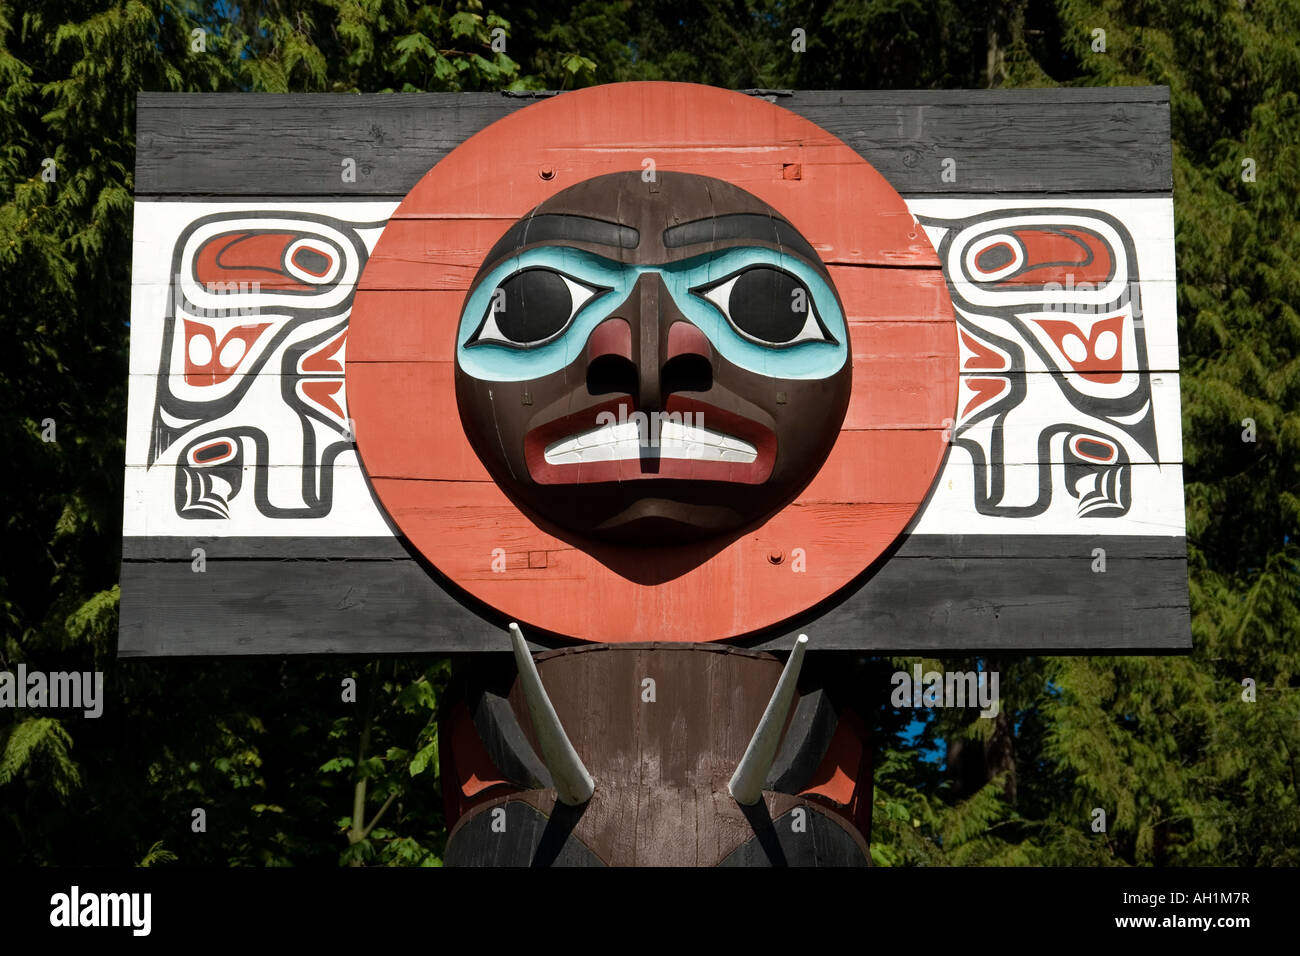 Chef Skedans totem mortuaire (1965), de Bill Reid et Werner vrai dans le parc Stanley de Vancouver, Colombie-Britannique, Canada Banque D'Images